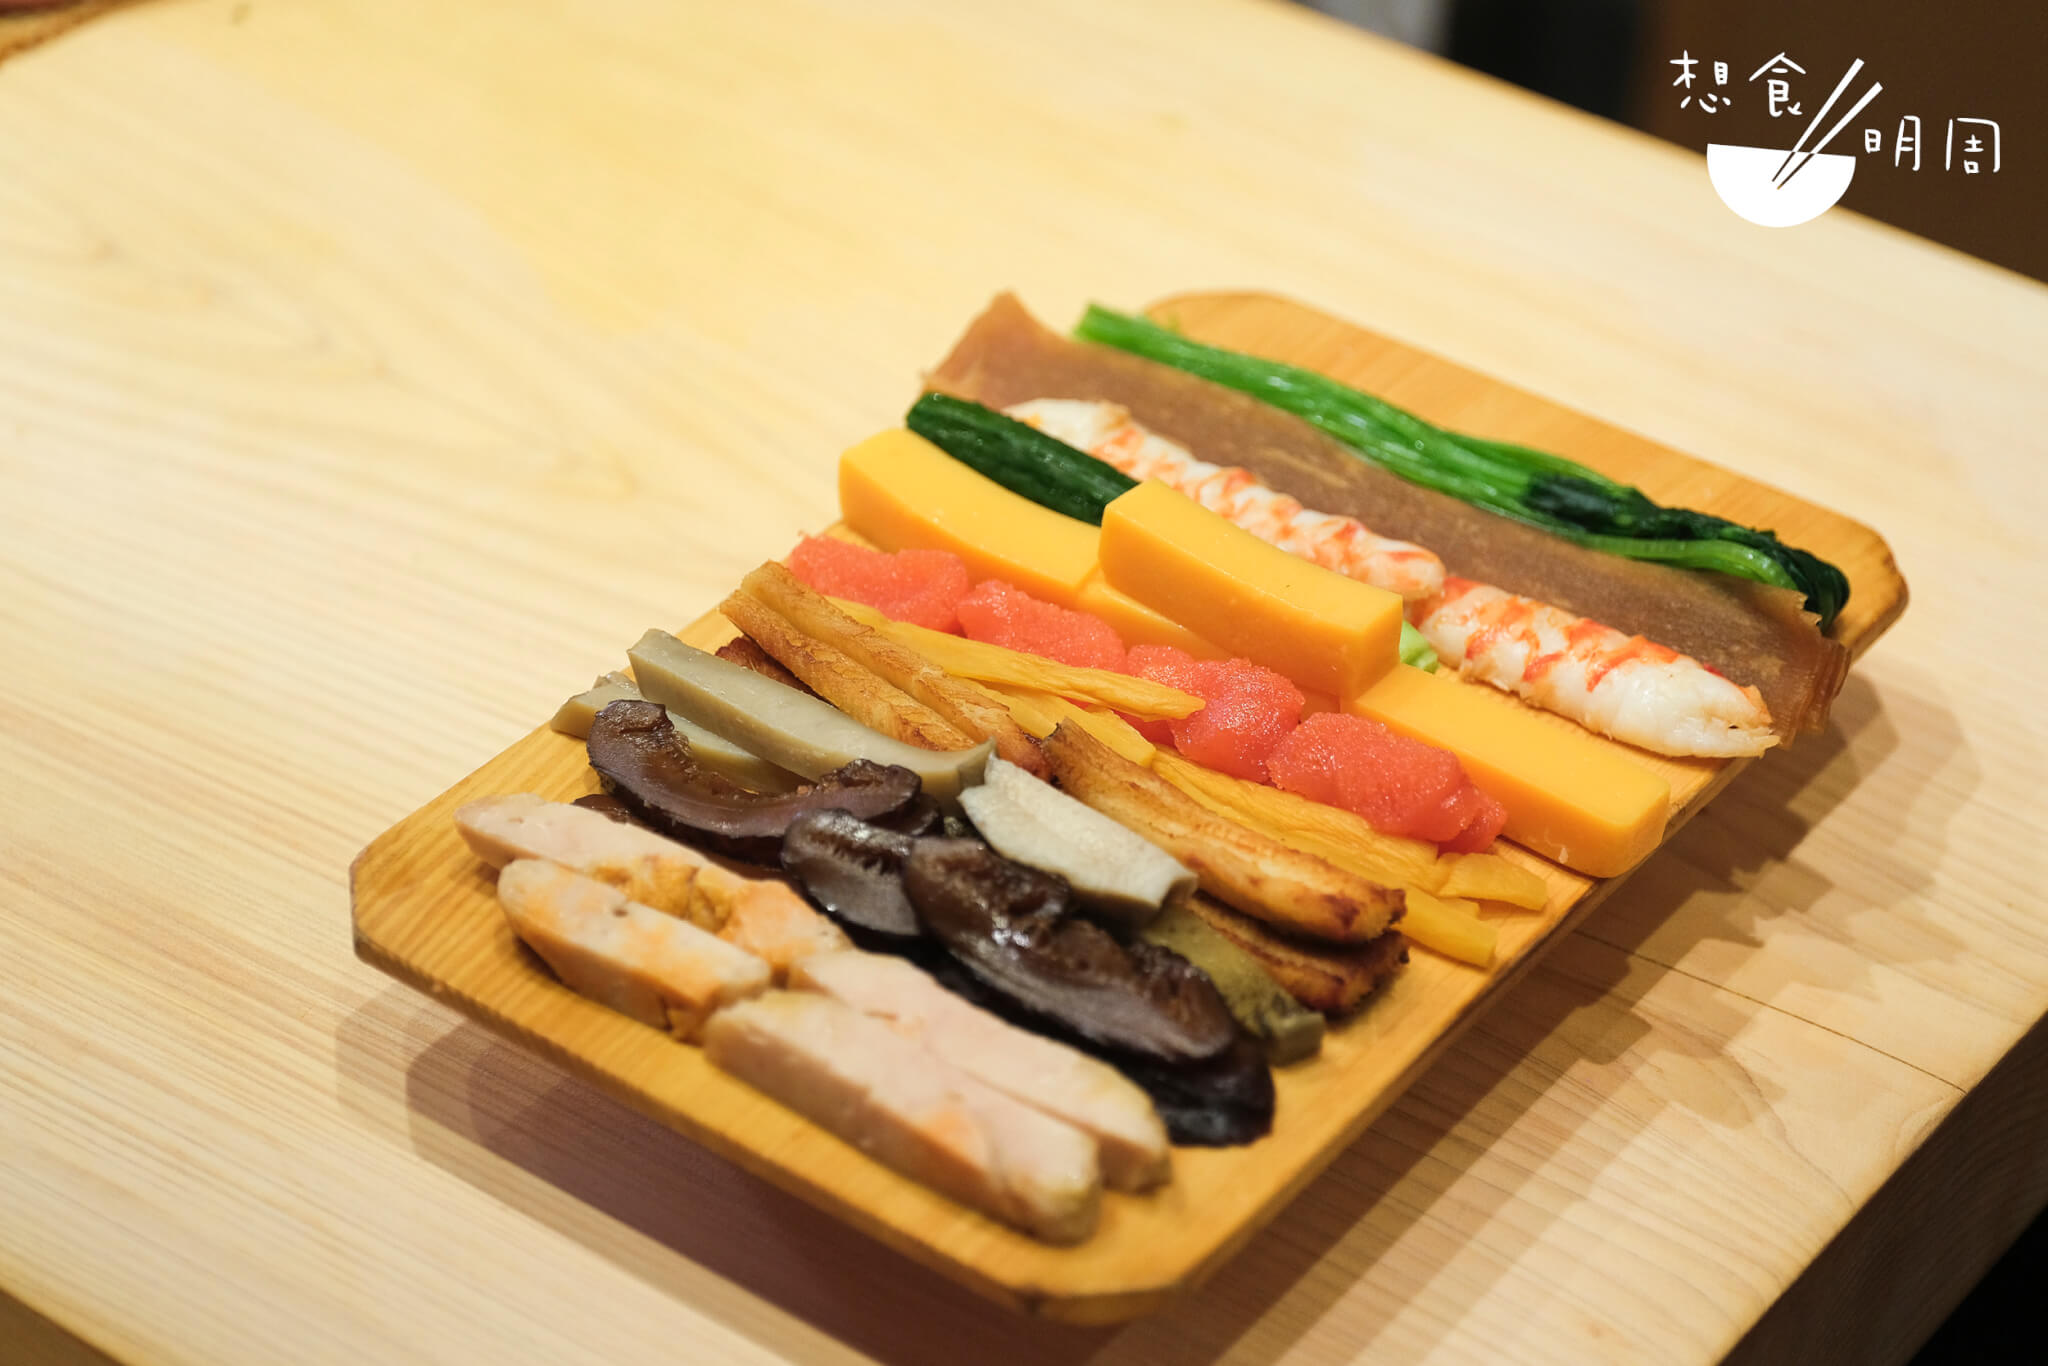 採訪當天的太卷壽司食材。